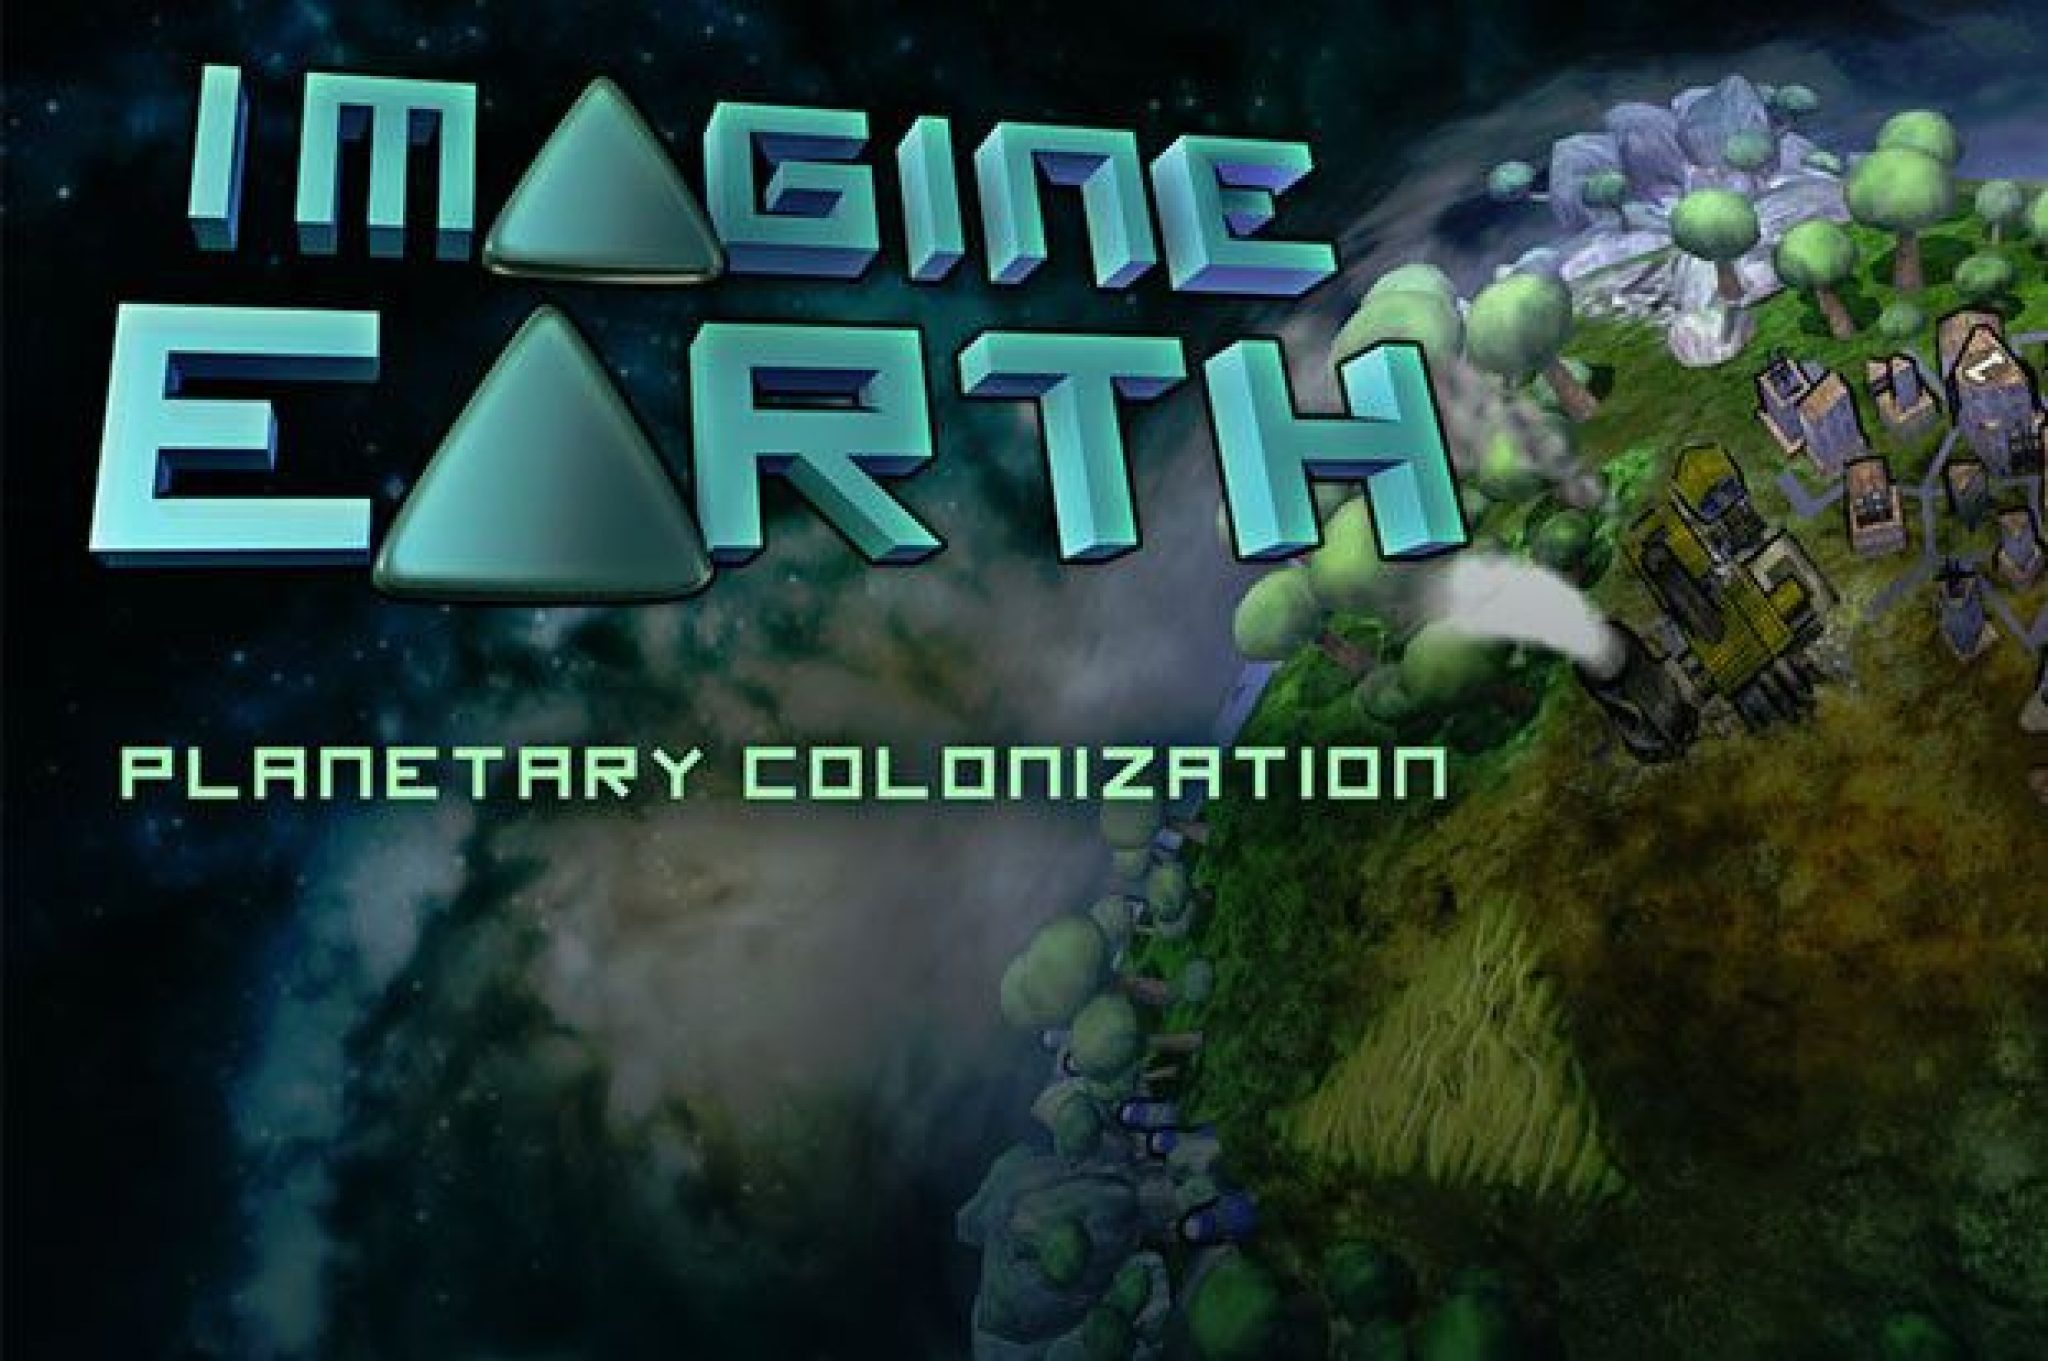 Earth Demo версия. Imagine Earth карта. Игра в названии Earth 2006-16. Earth Demo версия первая 2180.